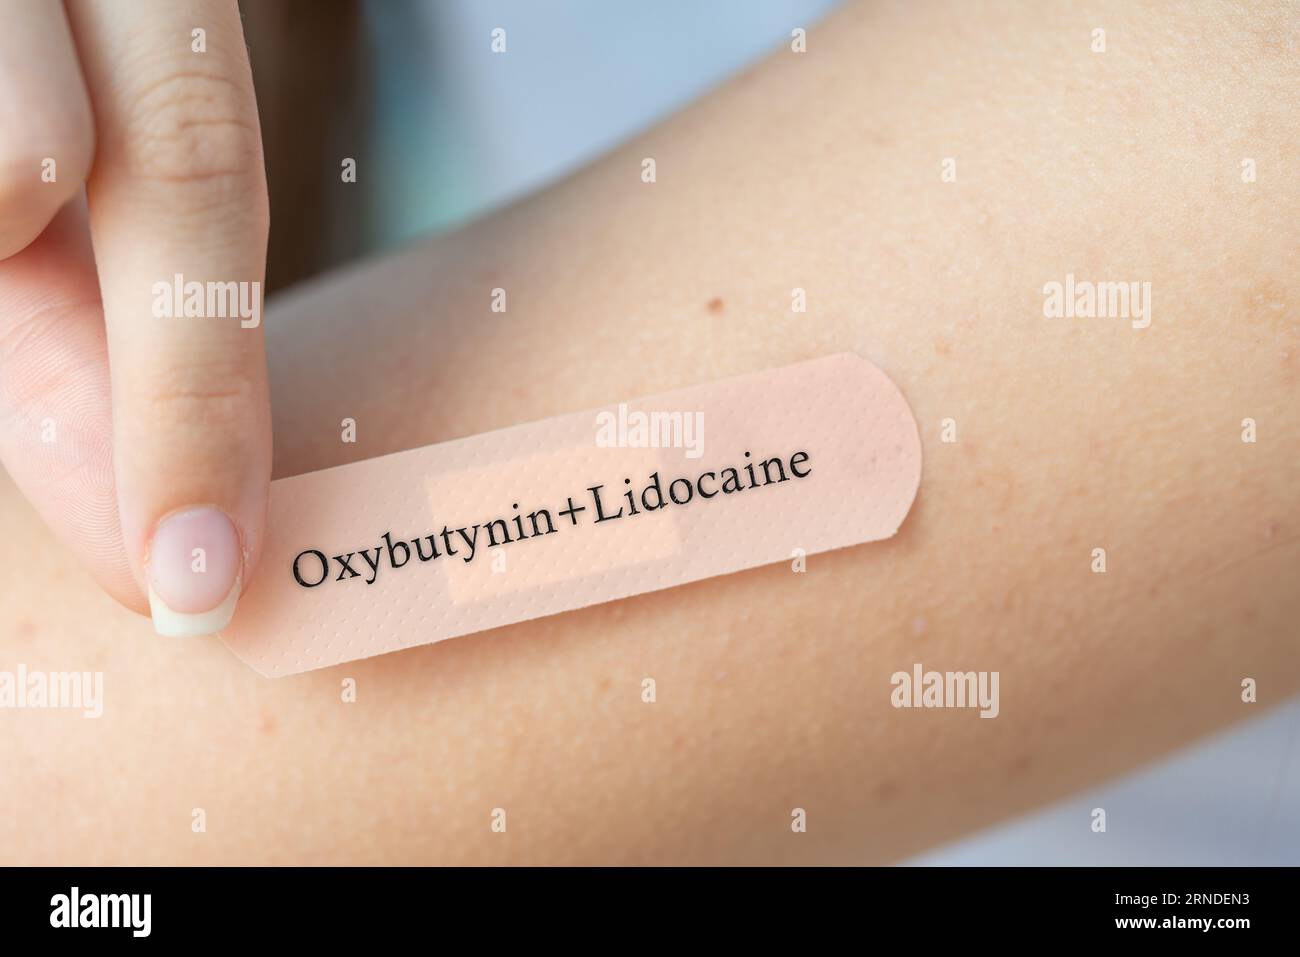 Oxybutynin/Lidocain: Kombination aus Anticholinergikum und Lokalanästhetikum bei überaktiver Blase. Stockfoto